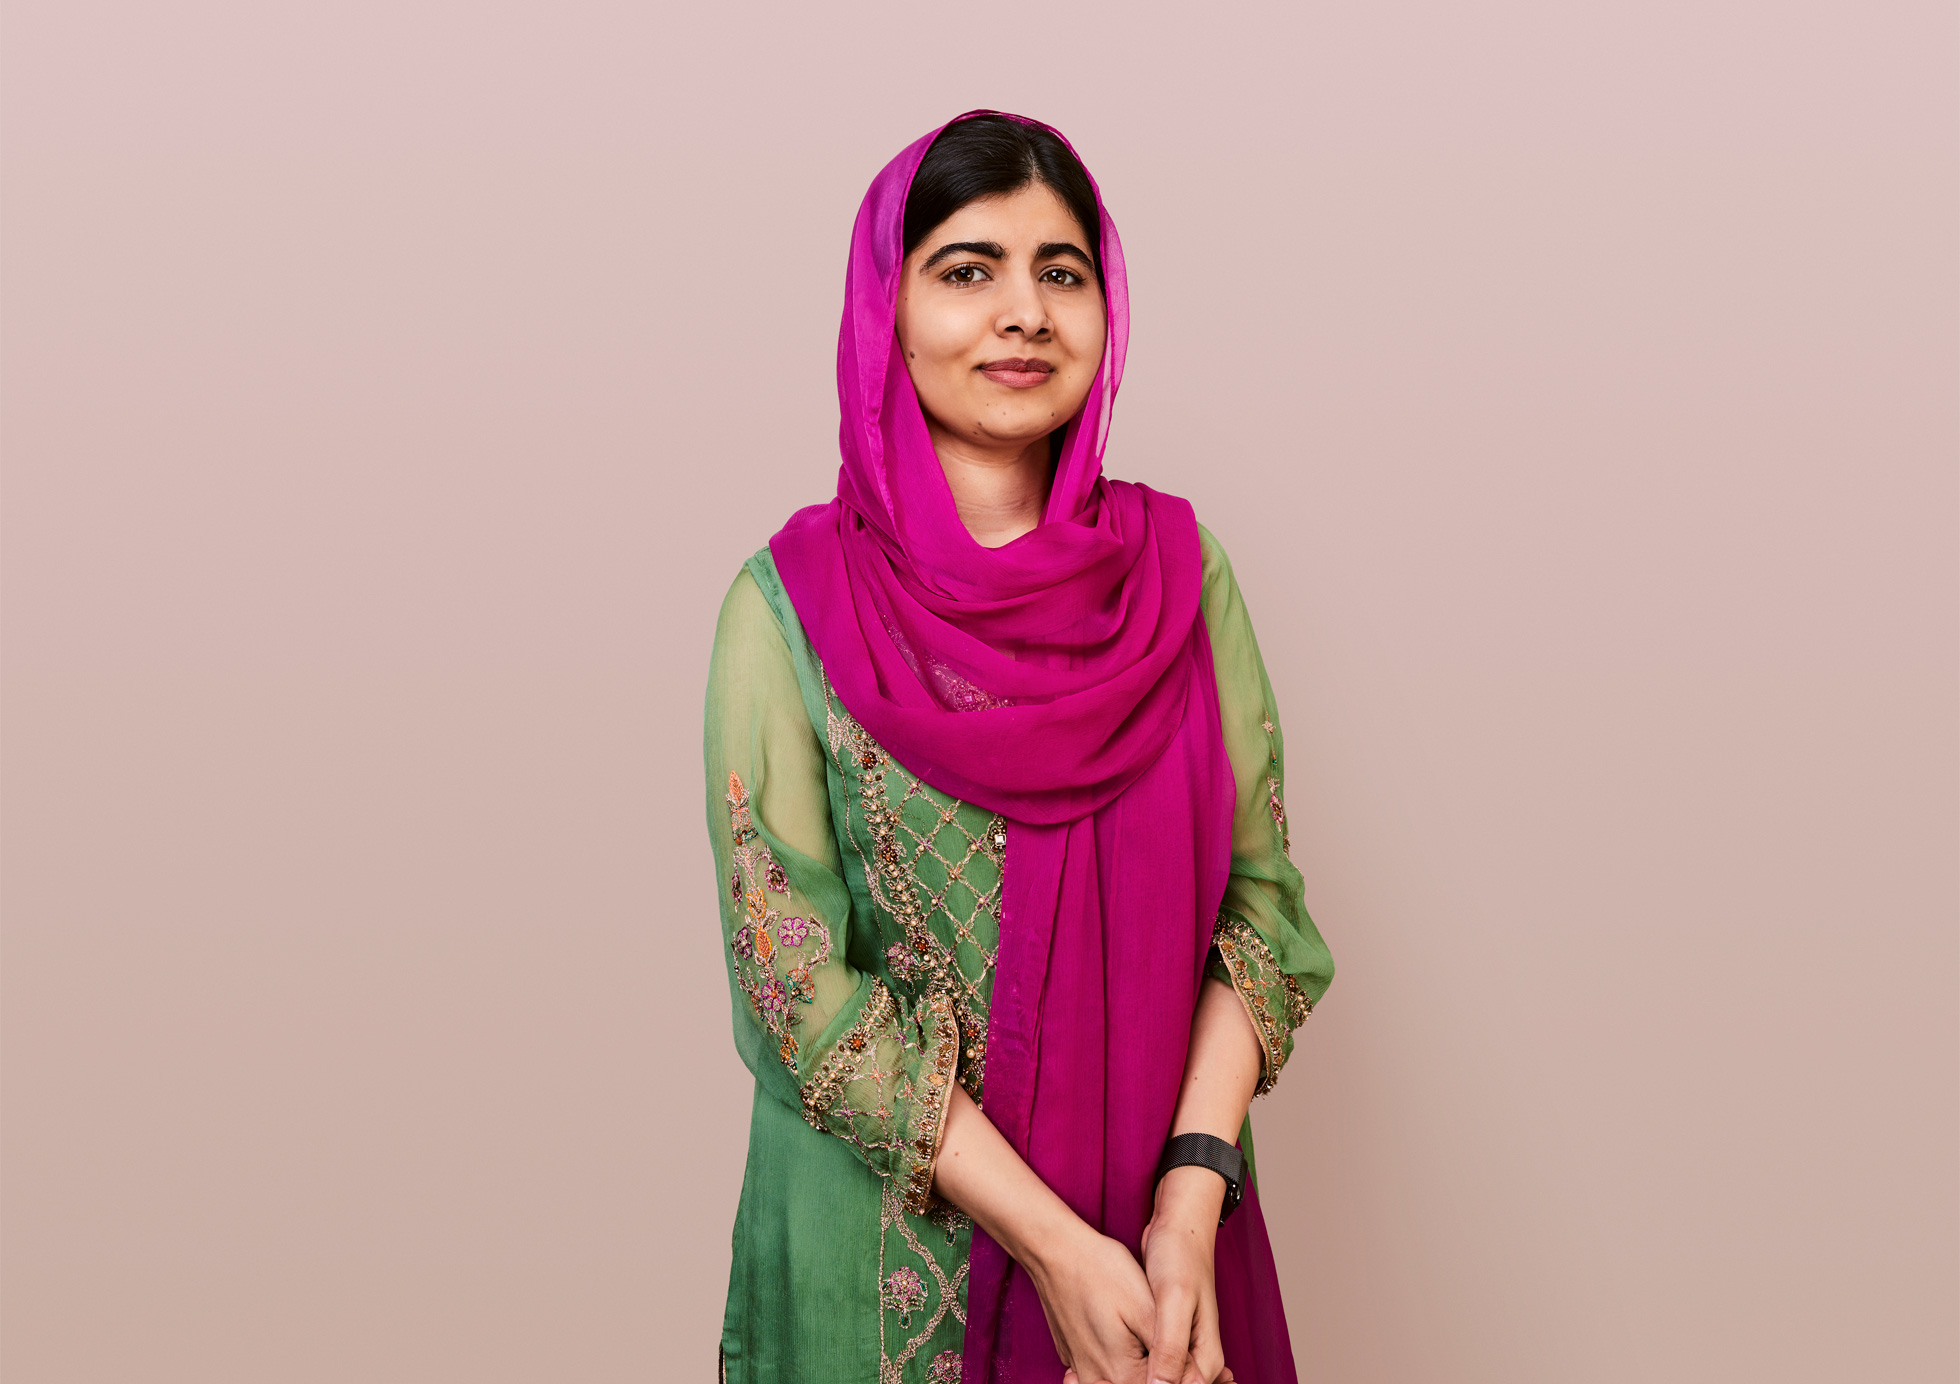 Apple_Nobel-laureate-Malala-Yousafzai-to-bring-empowering-programming-to-Apple-TVPlus_030821_big.jpg.large_2x.jpg